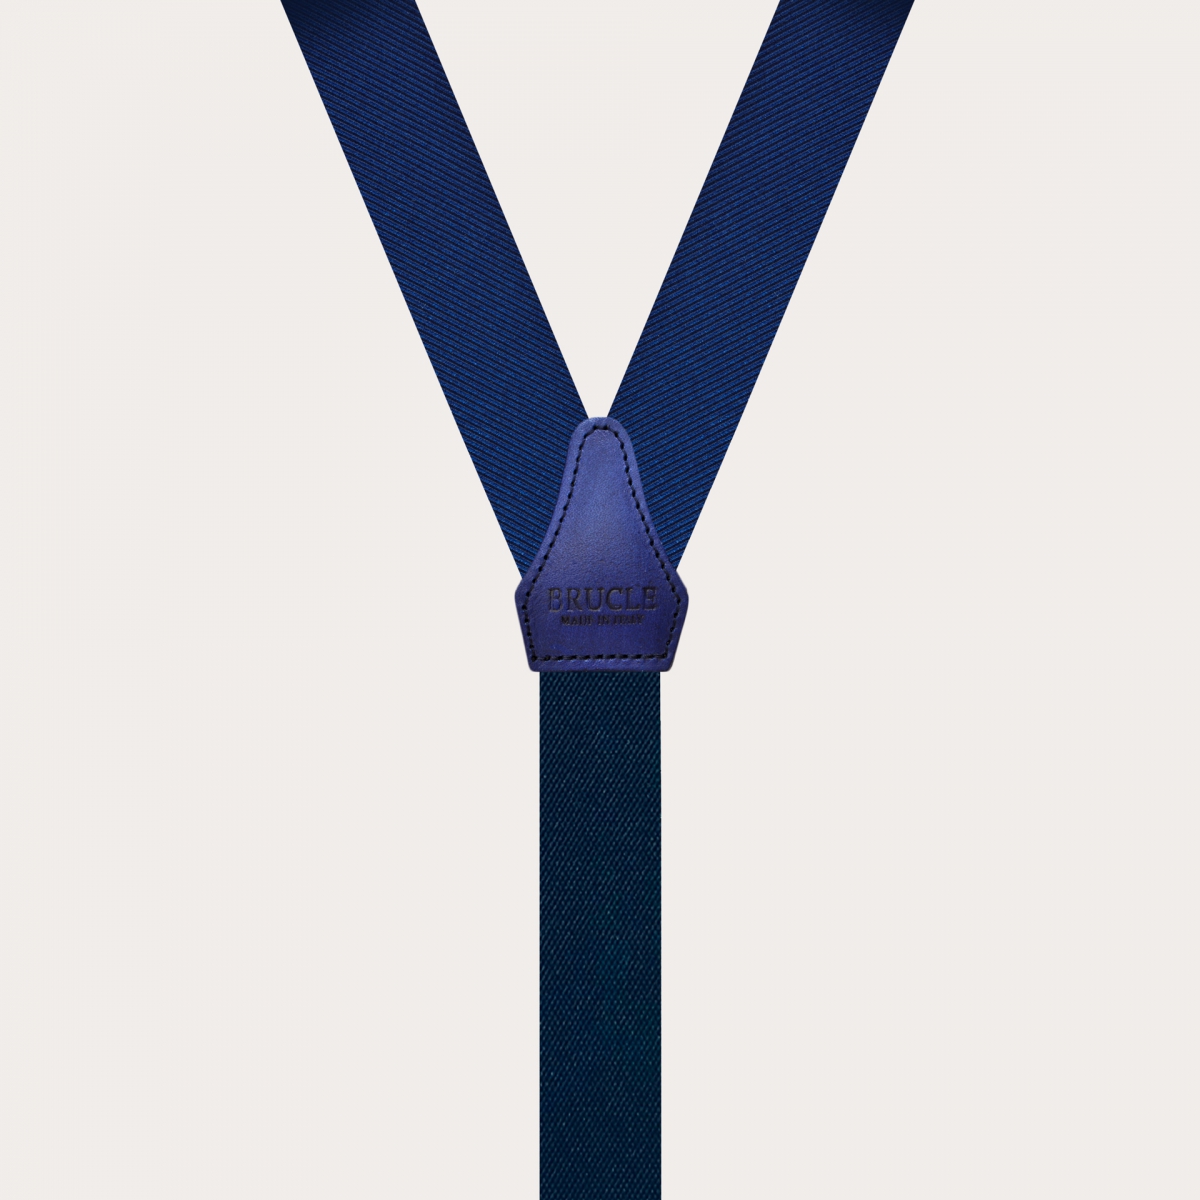 BRUCLE Klassische schmale blaue Hosenträger mit Knopflöchern aus Jacquard-Seide